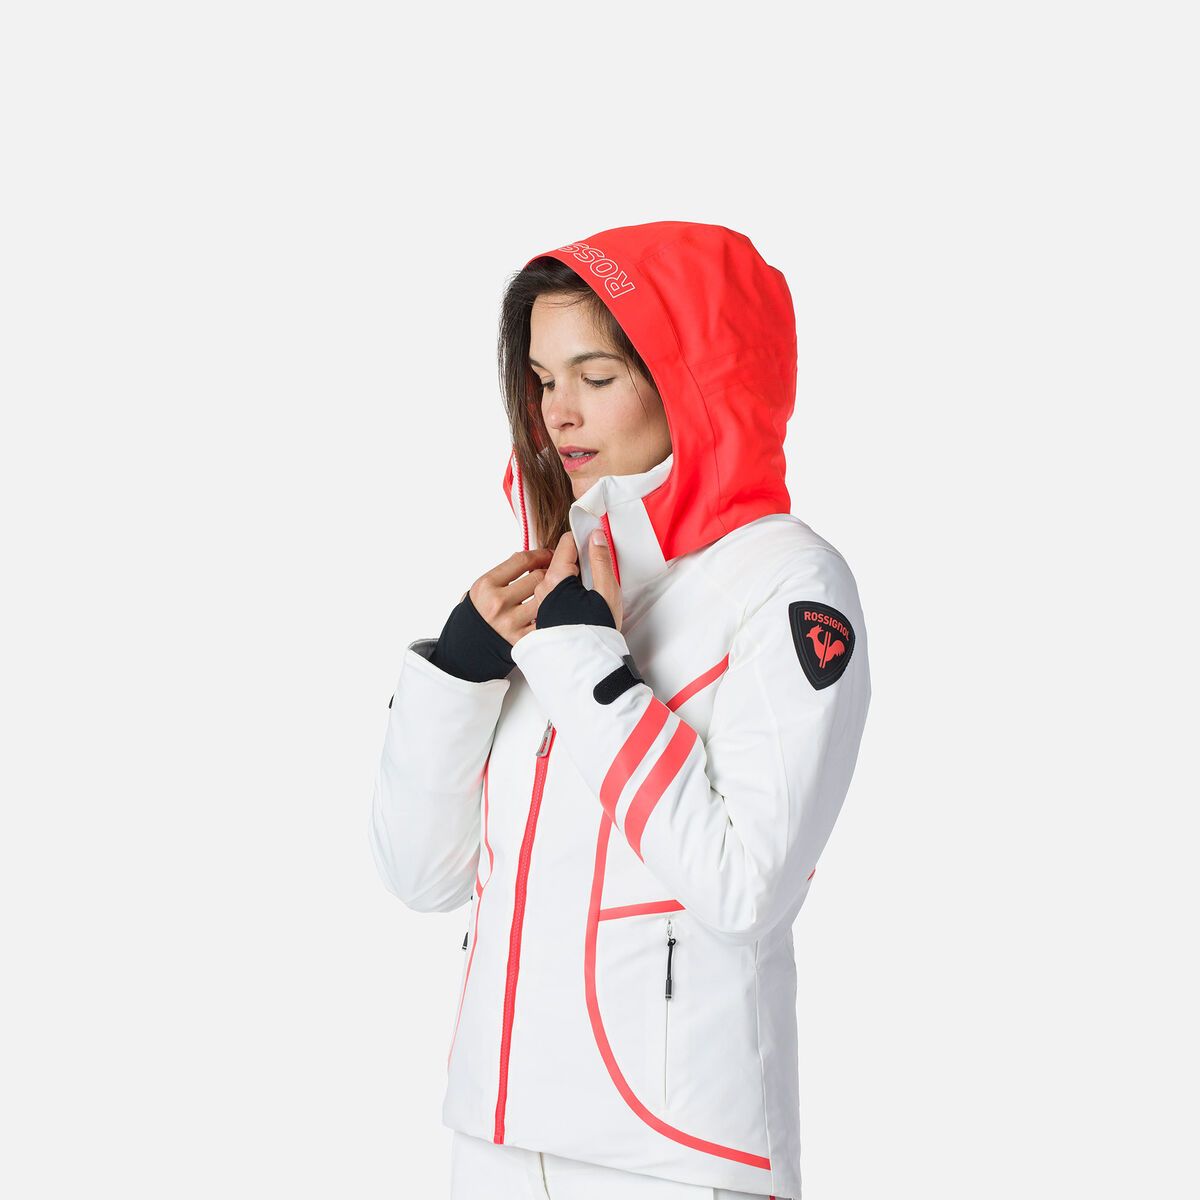 Women's Hero Four-Way Stretch Ski Jacket